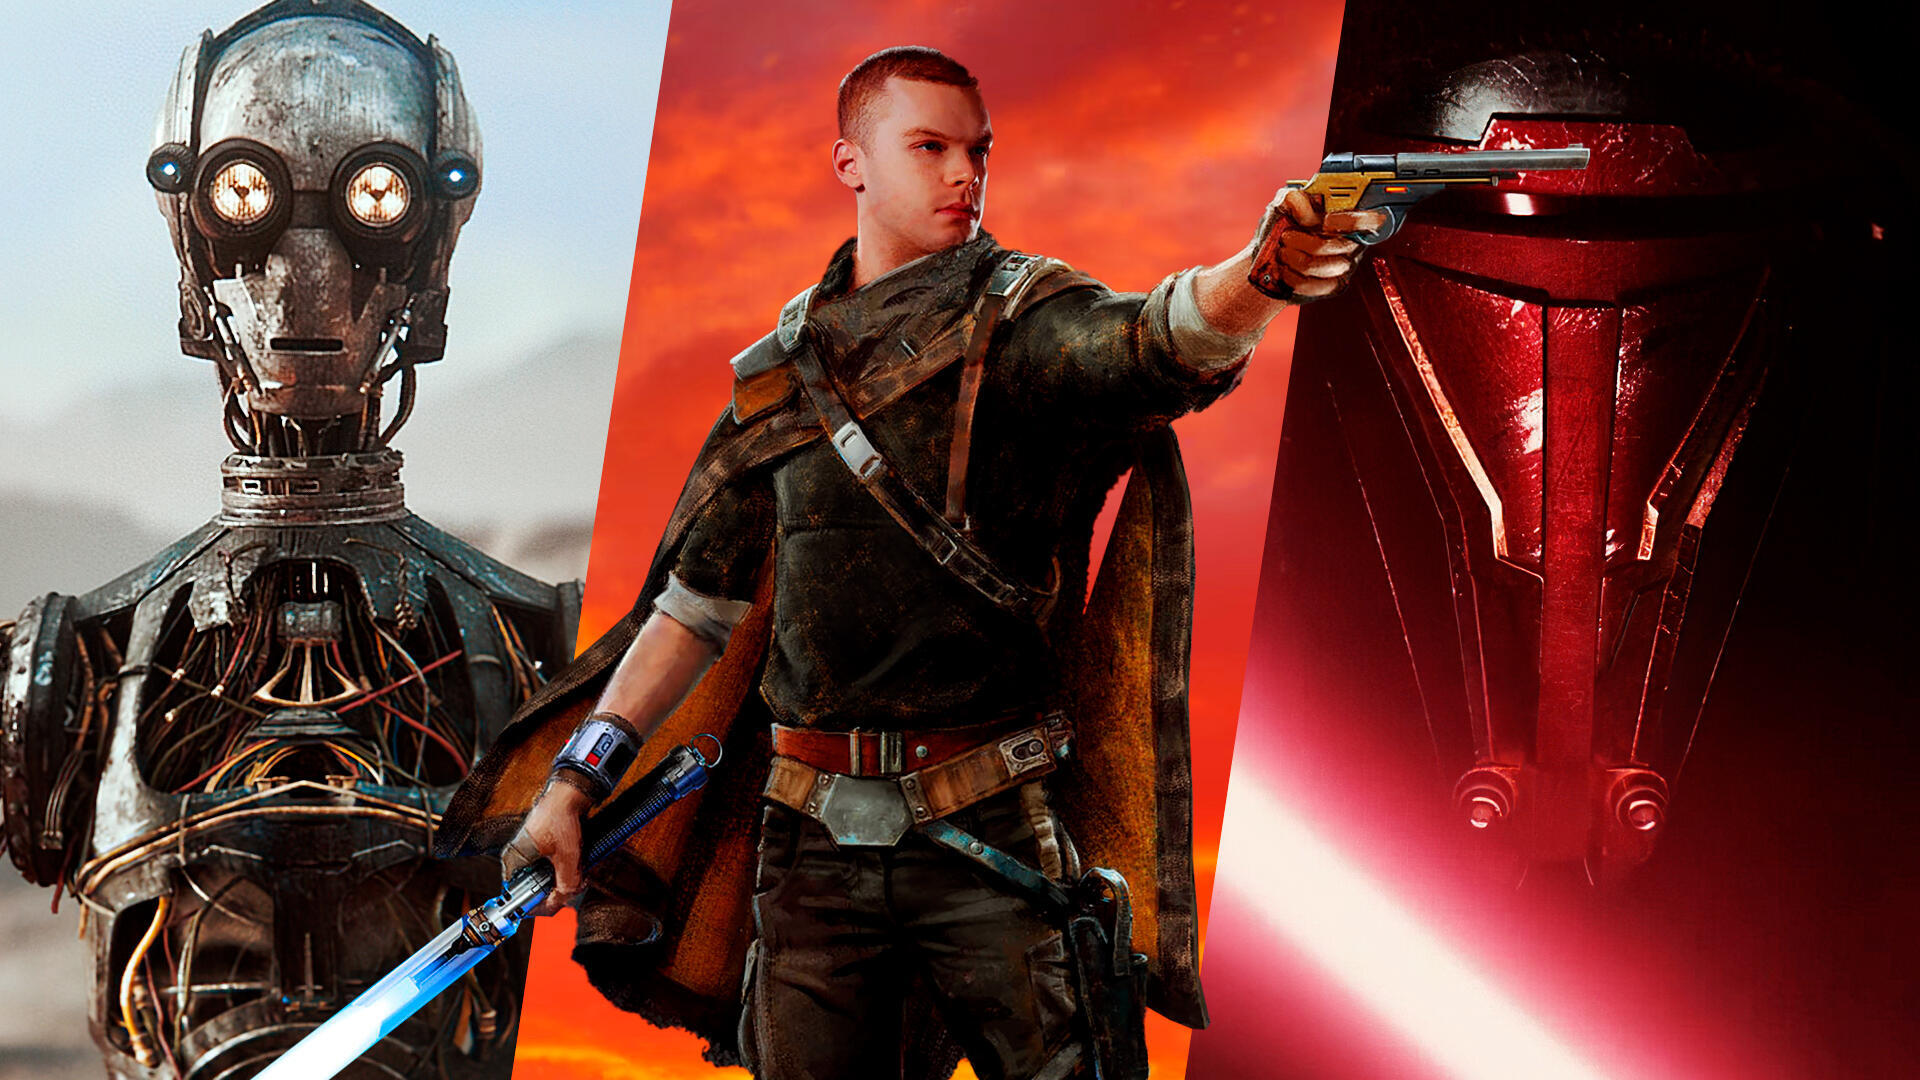 Tras Star Wars Outlaws, cules son los prximos videojuegos confirmados de Star Wars que estn por llegar?